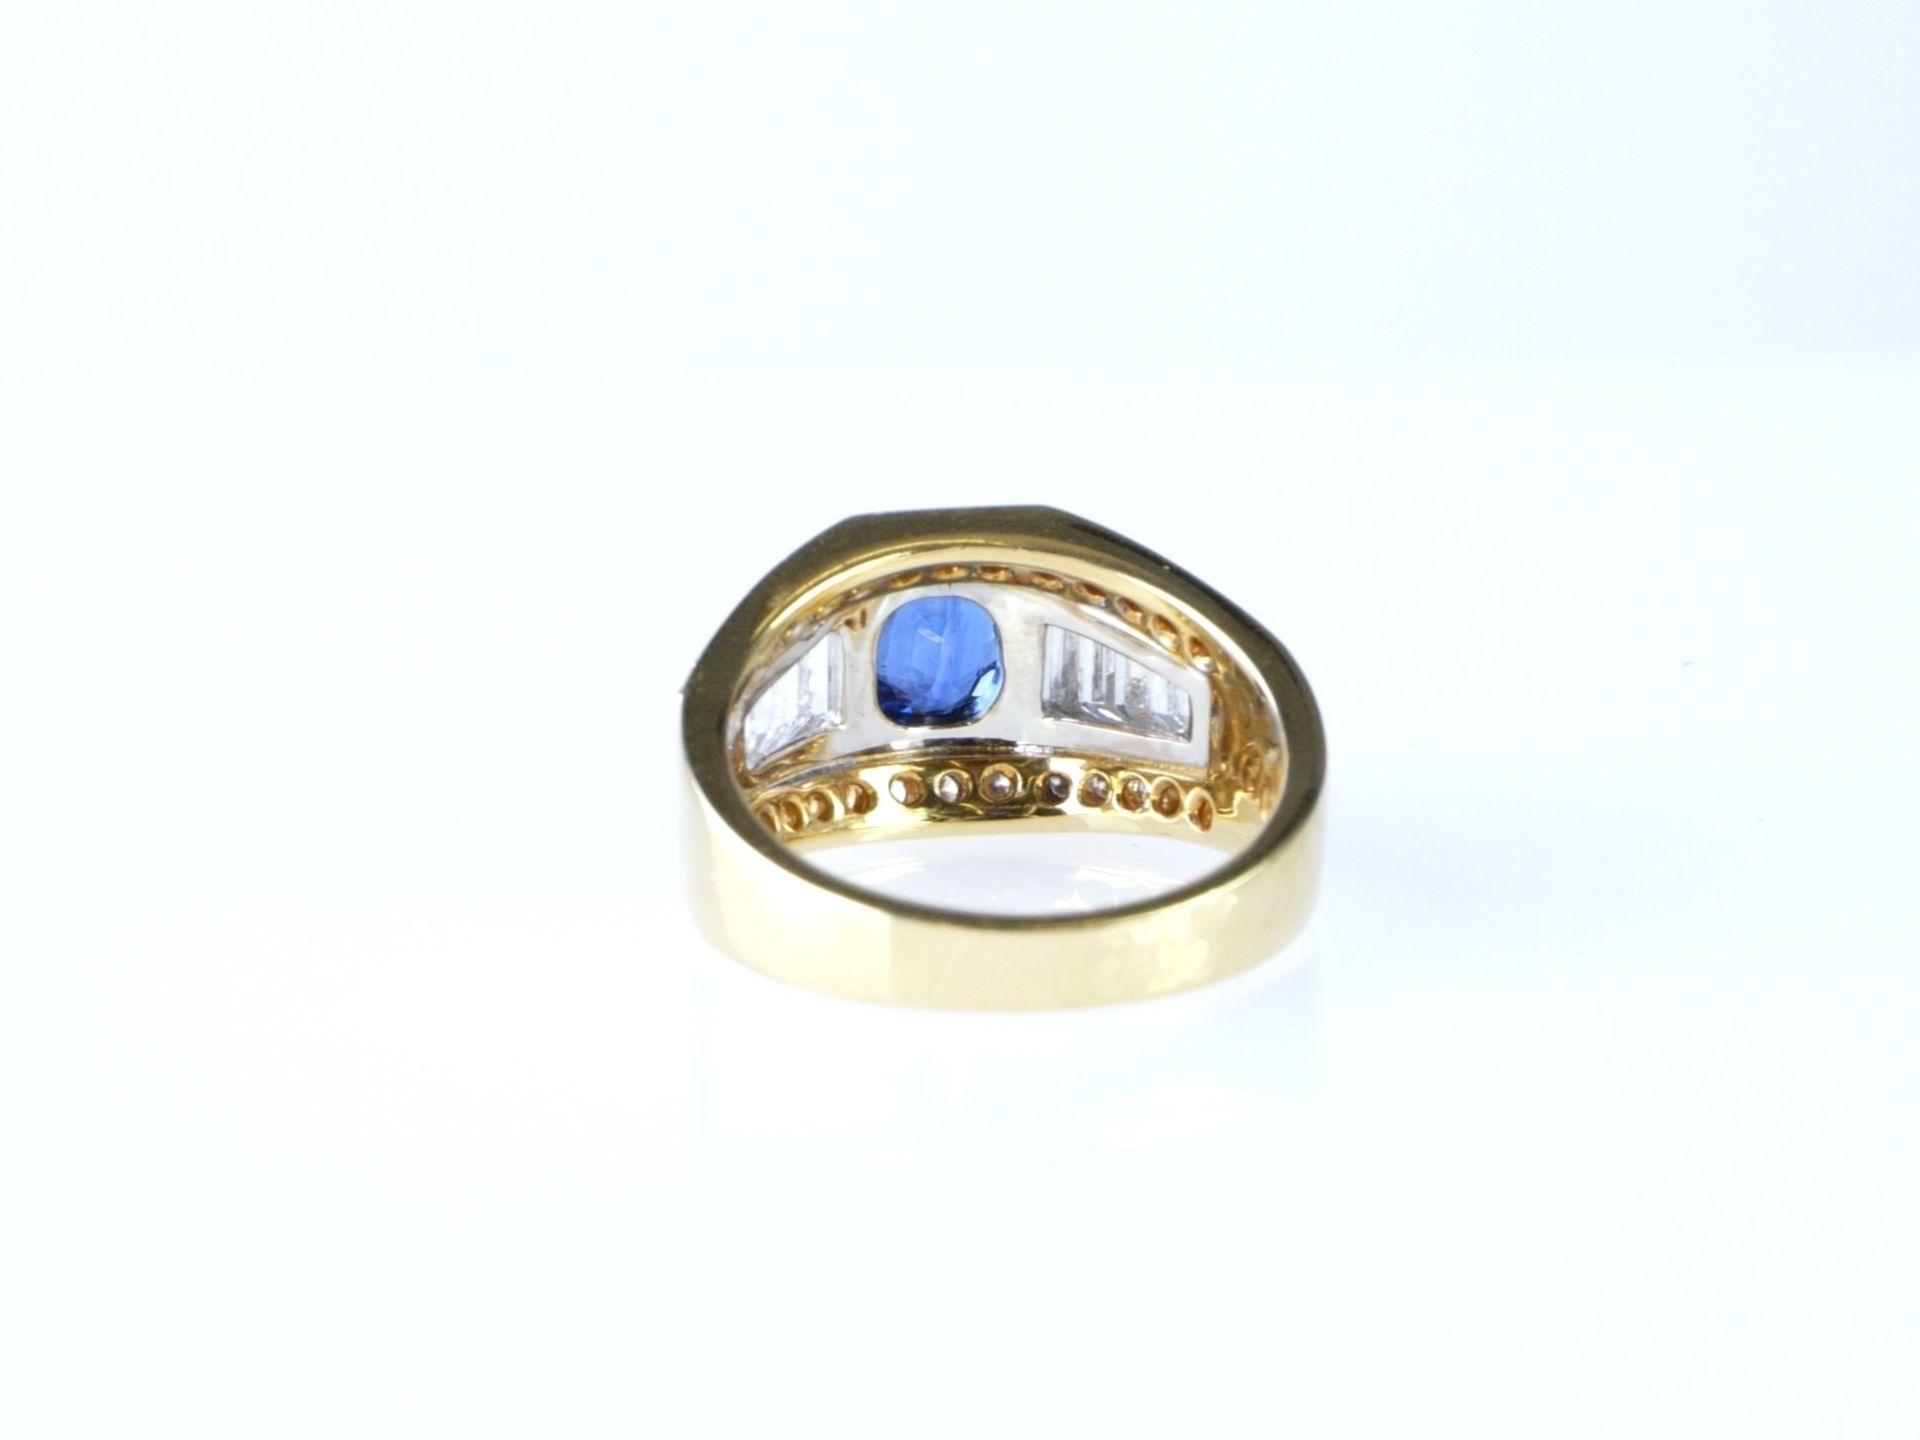 Schott Saphir Ring in Bicolor WG/GG 750 mit Diamanten und Brillanten - Bild 4 aus 5